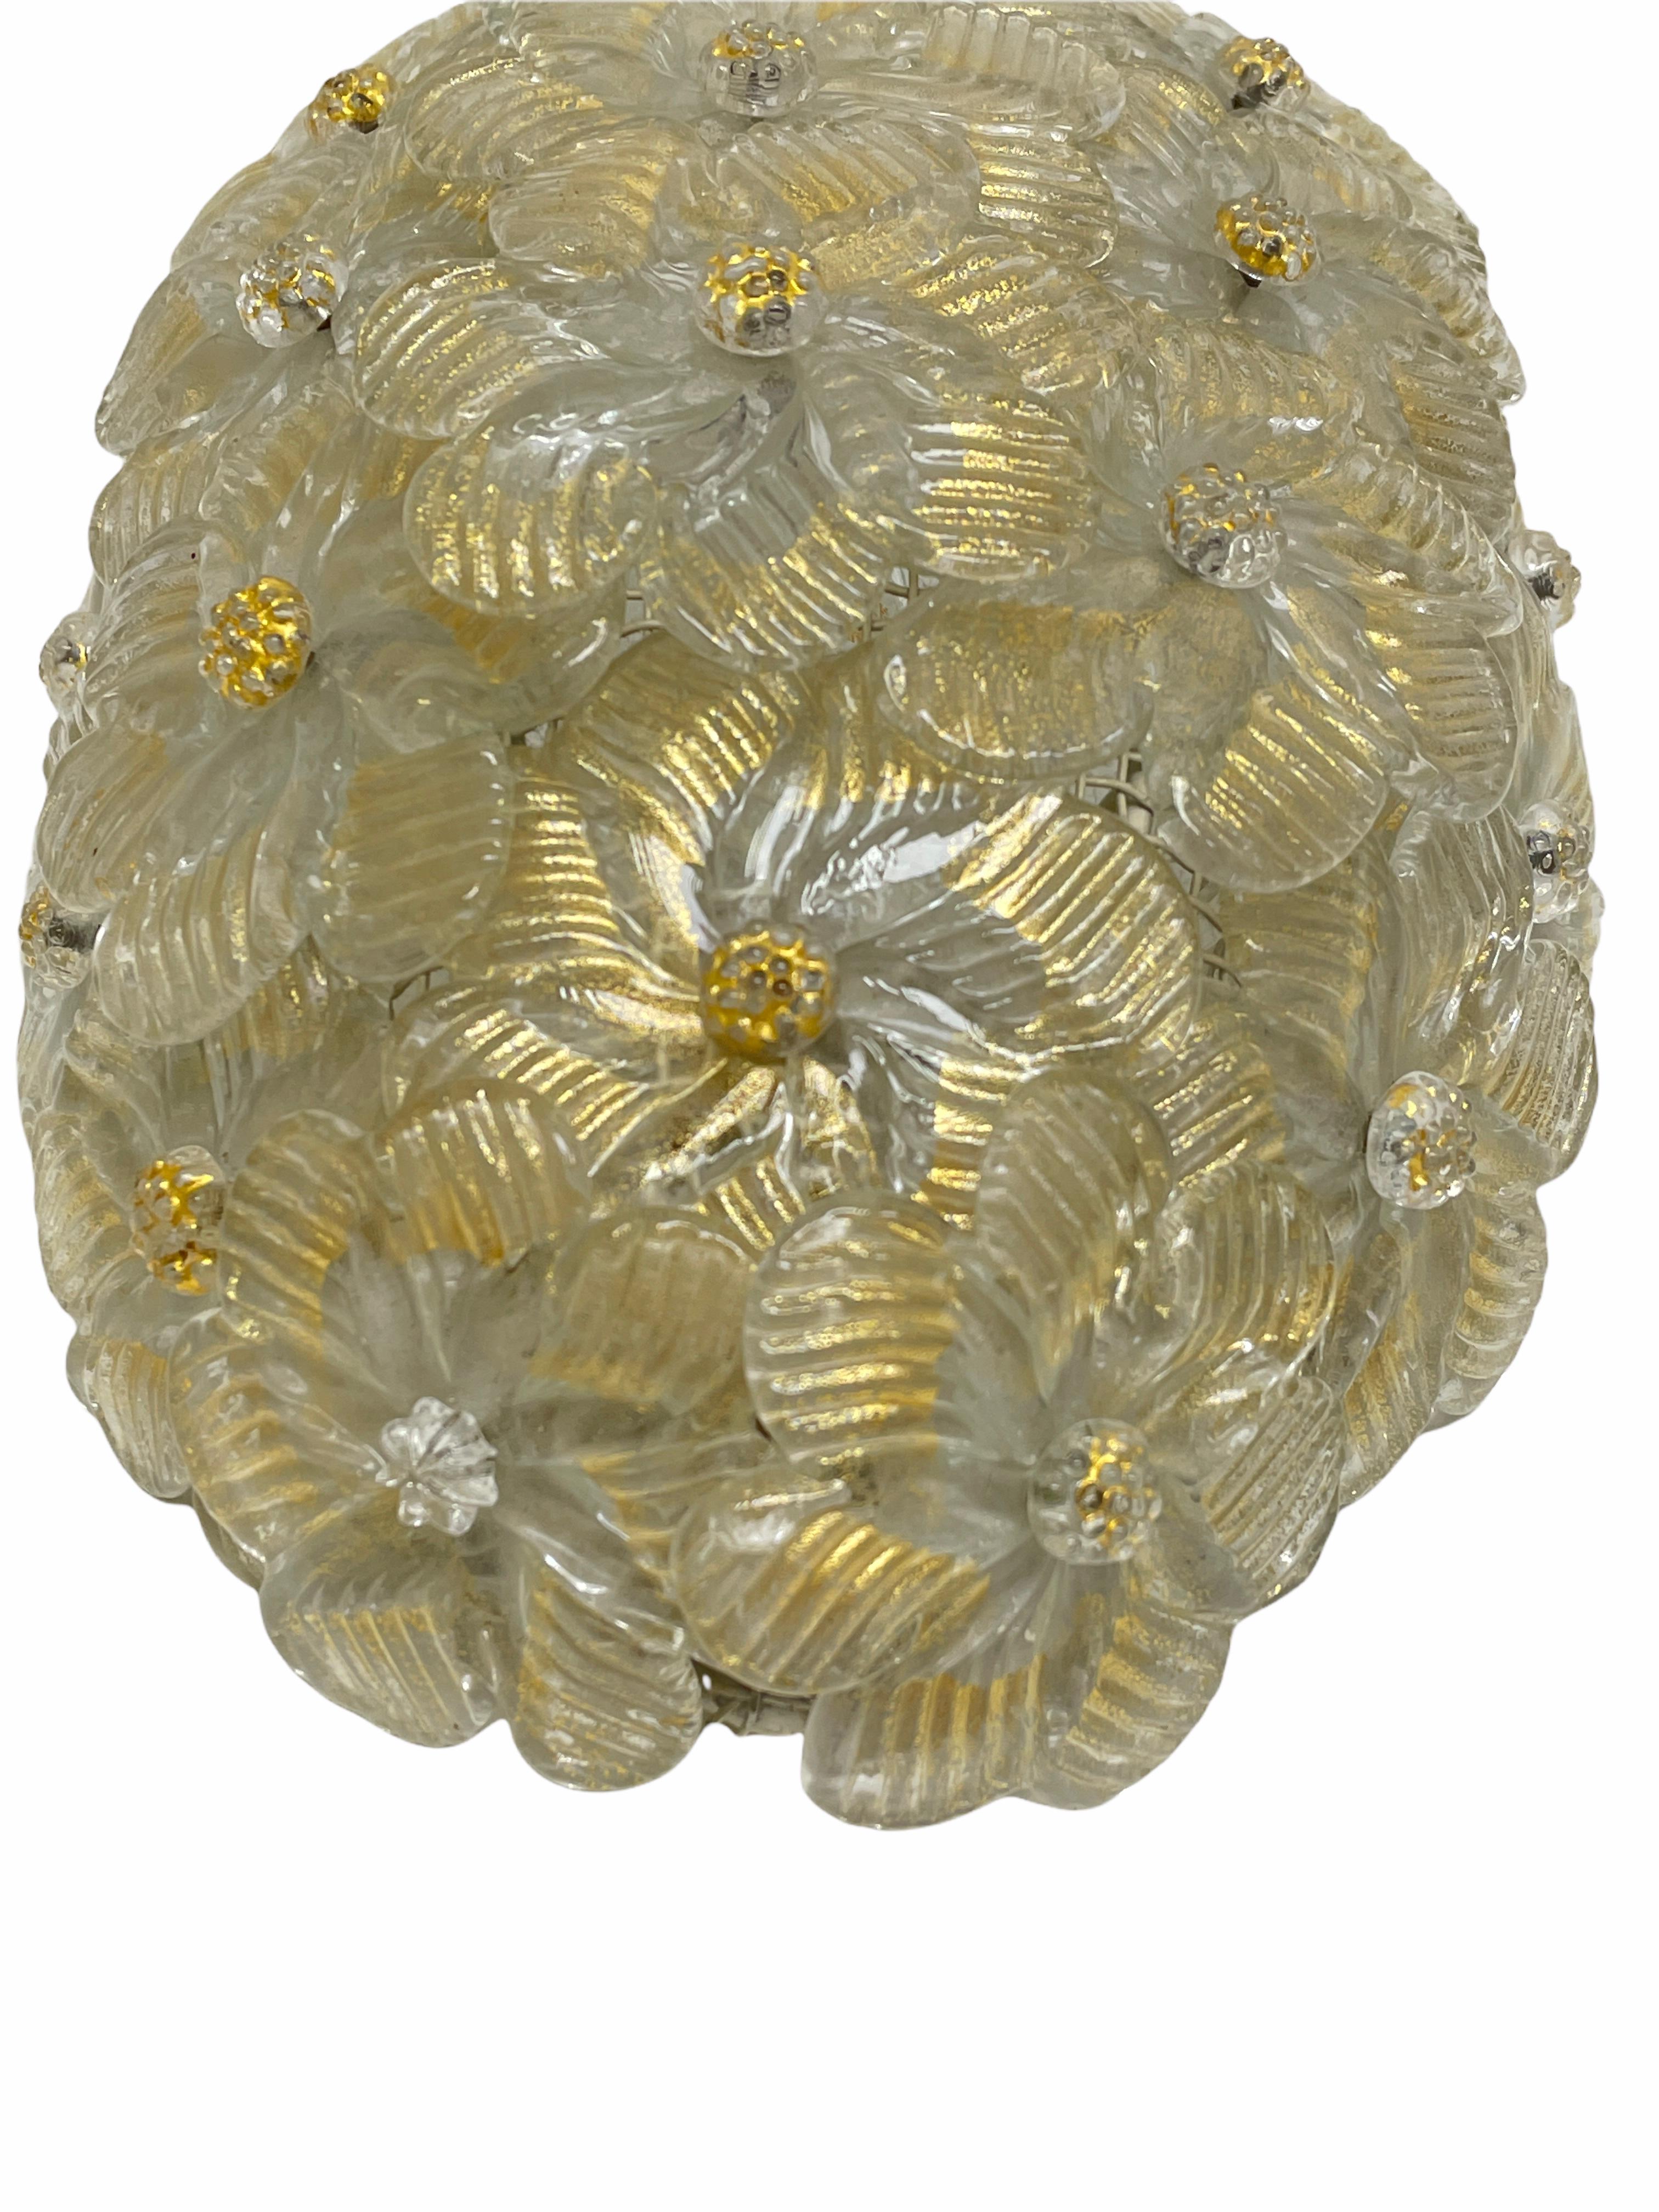 Magnifique applique italienne soufflée à la main, présentant des fleurs de cristal qui se chevauchent, dorées avec des inclusions de feuilles d'or 23 carats, montées sur un cadre en forme de panier. Le luminaire nécessite une ampoule candélabre